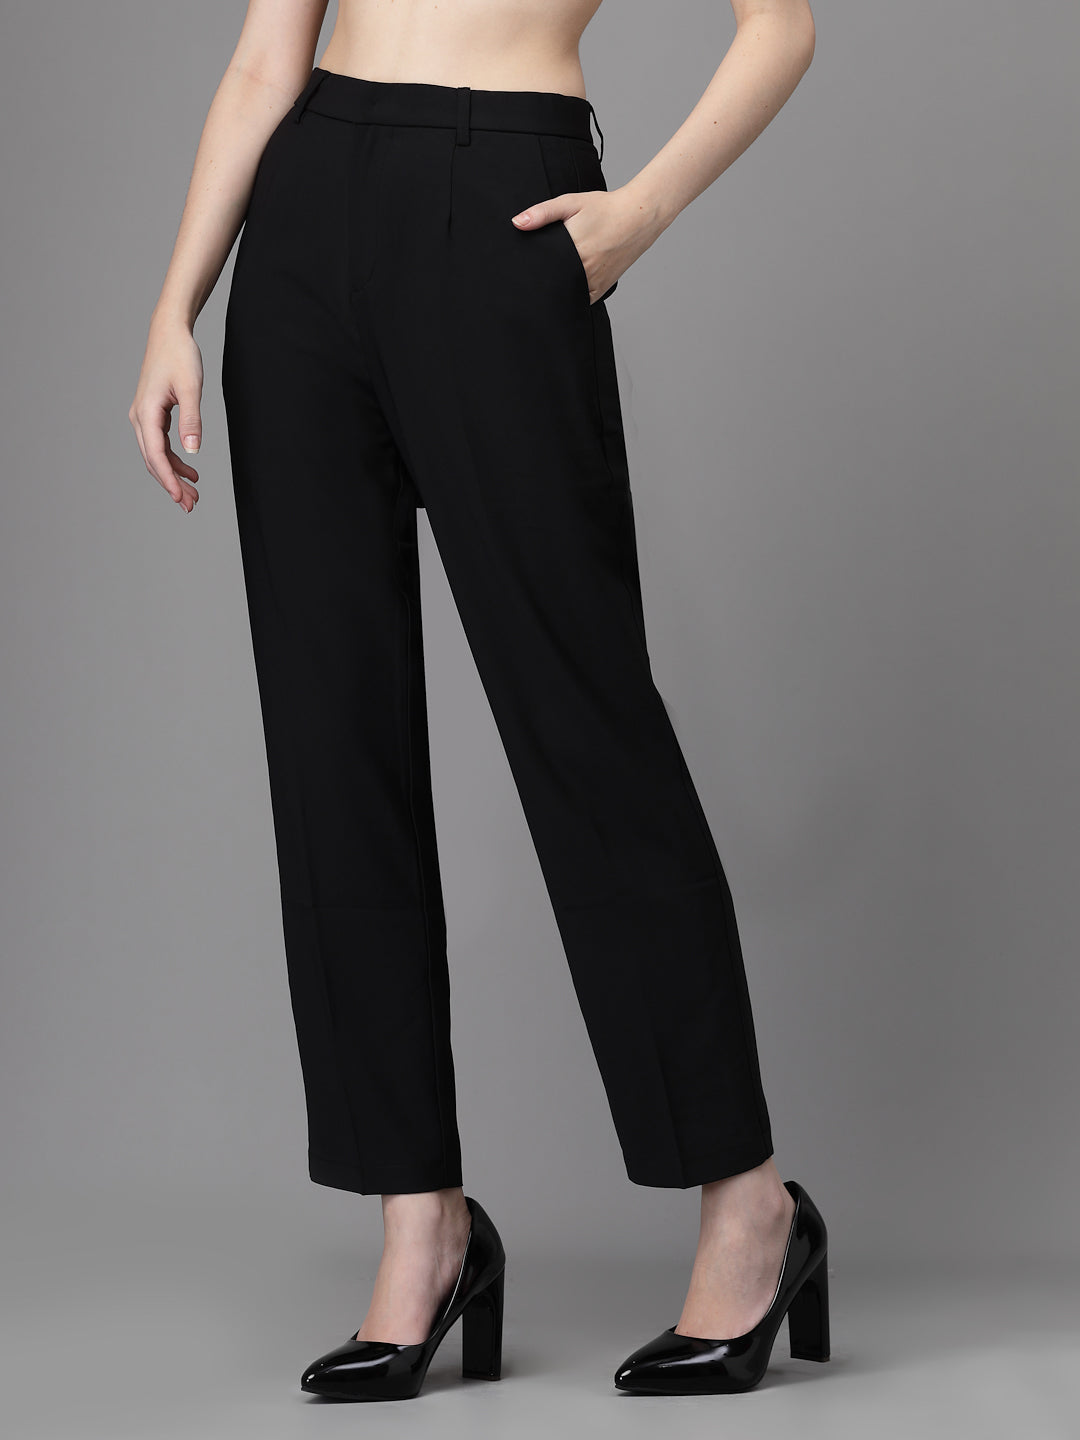 Ladies Pants - BLACK - 98/2 WOOL/LYCRA SUPER100 – Hardwick.com